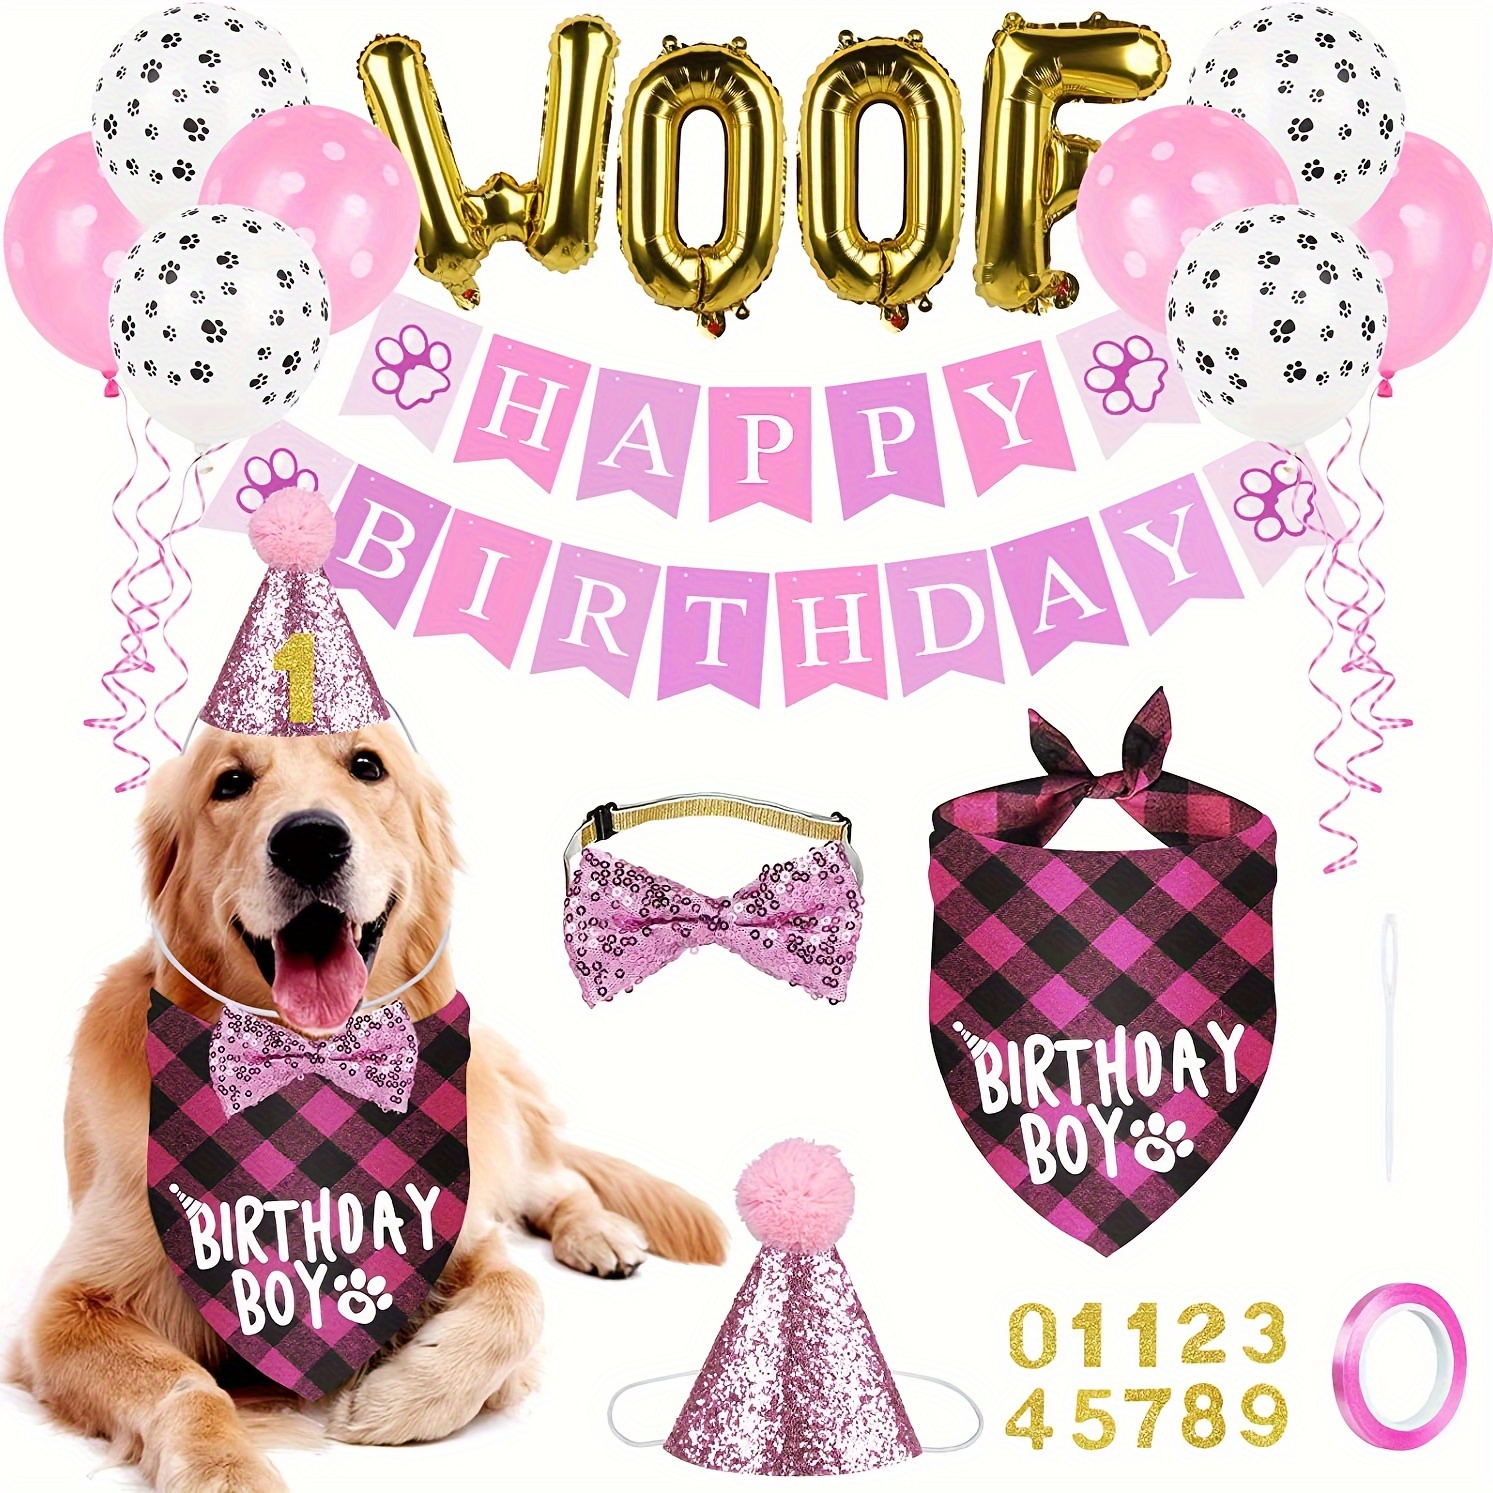 Decoraciones de fiesta de cumpleaños de pata de perro rosa, juego de  suministros de fiesta temática de patas para niñas con kit de guirnalda de